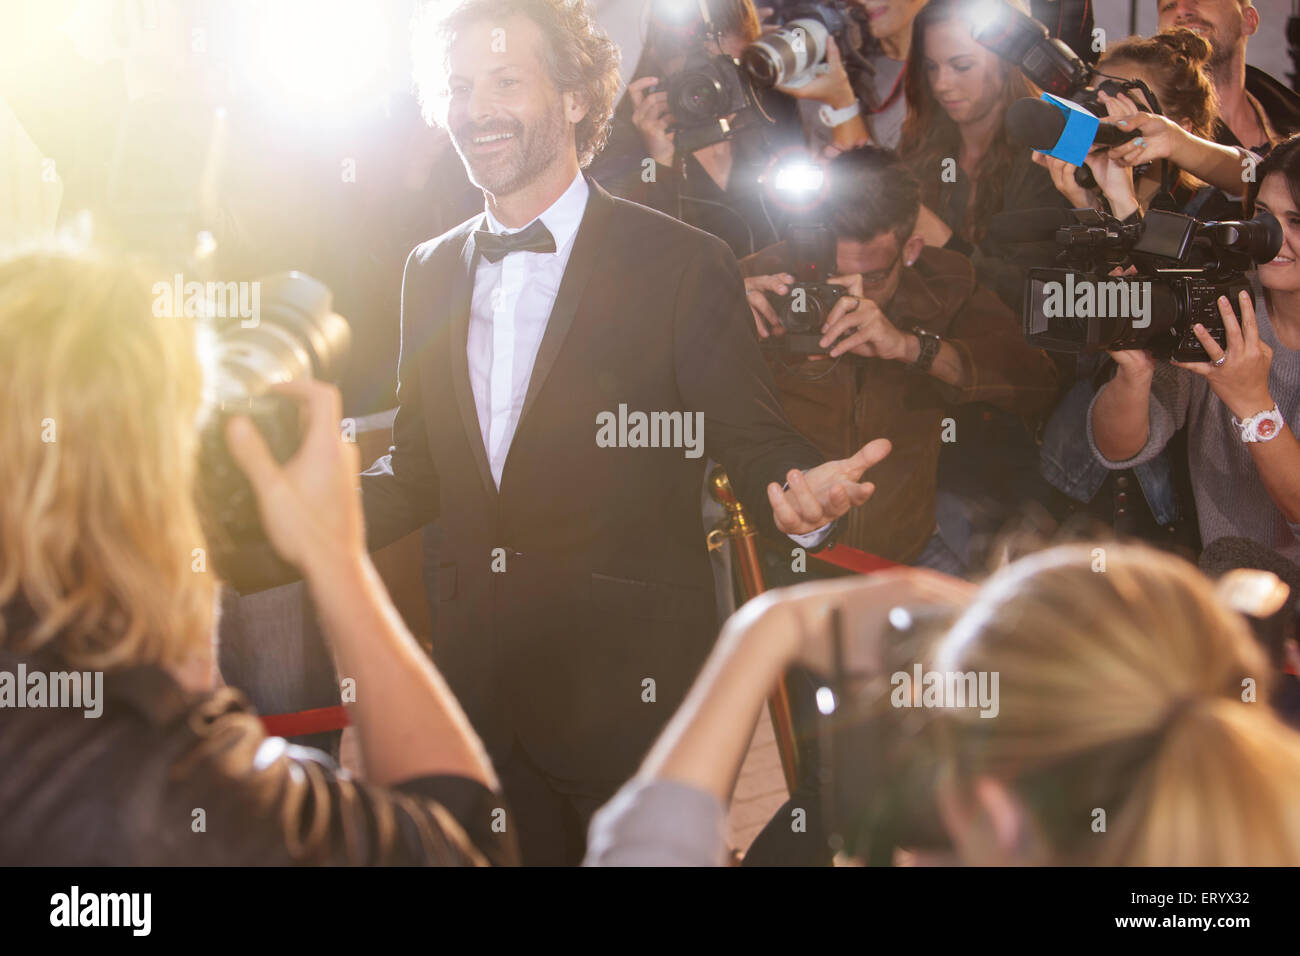 Lächelnd Promi posieren für Paparazzi-Fotografen bei Veranstaltung Stockfoto